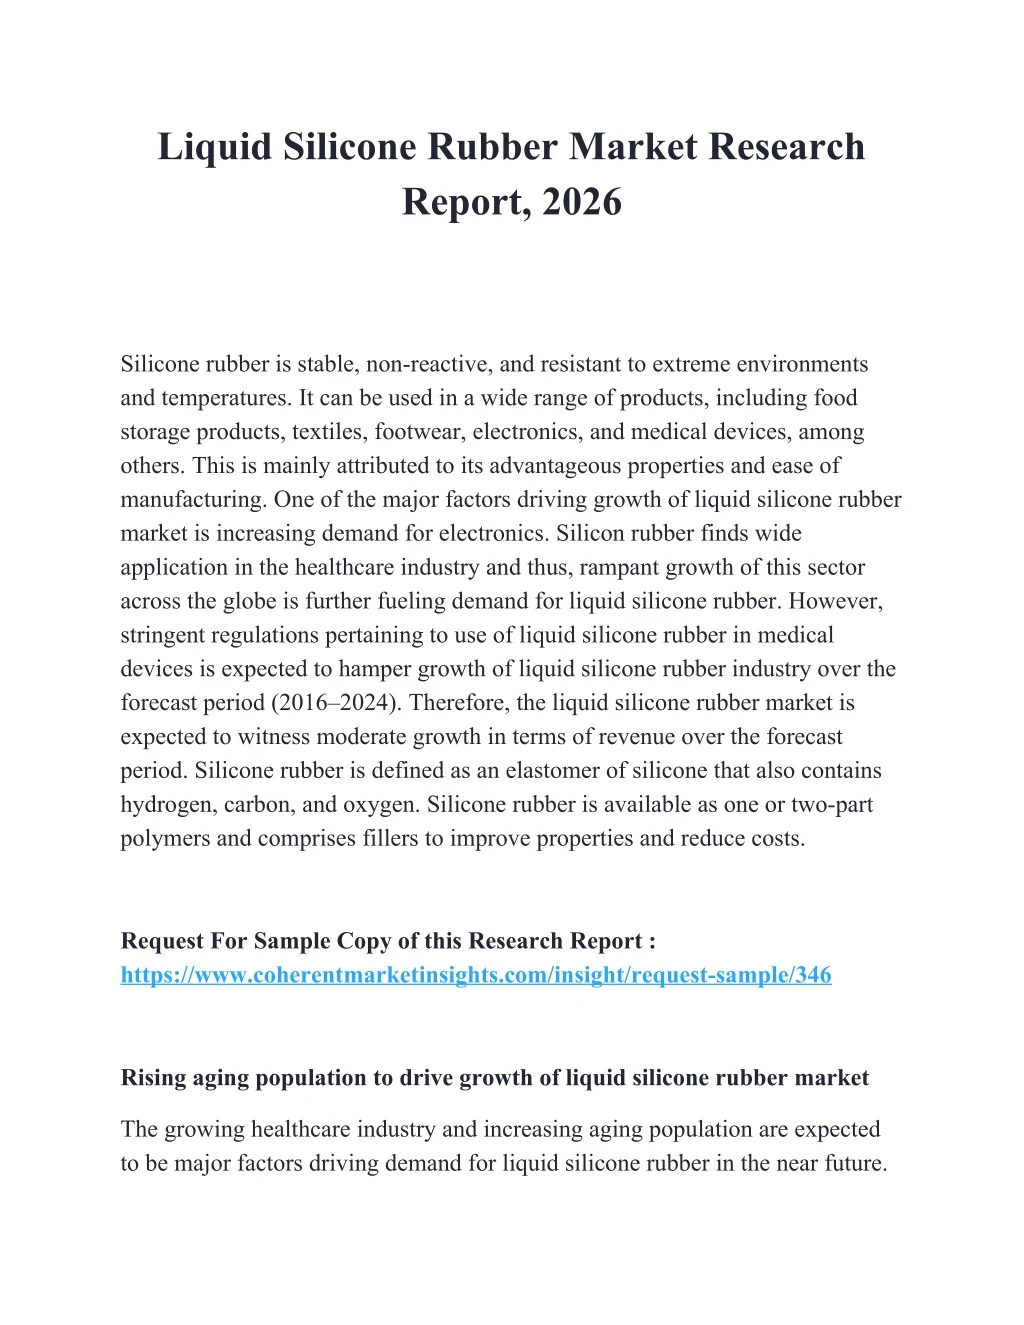 liquid silicone rubber market research report 2026